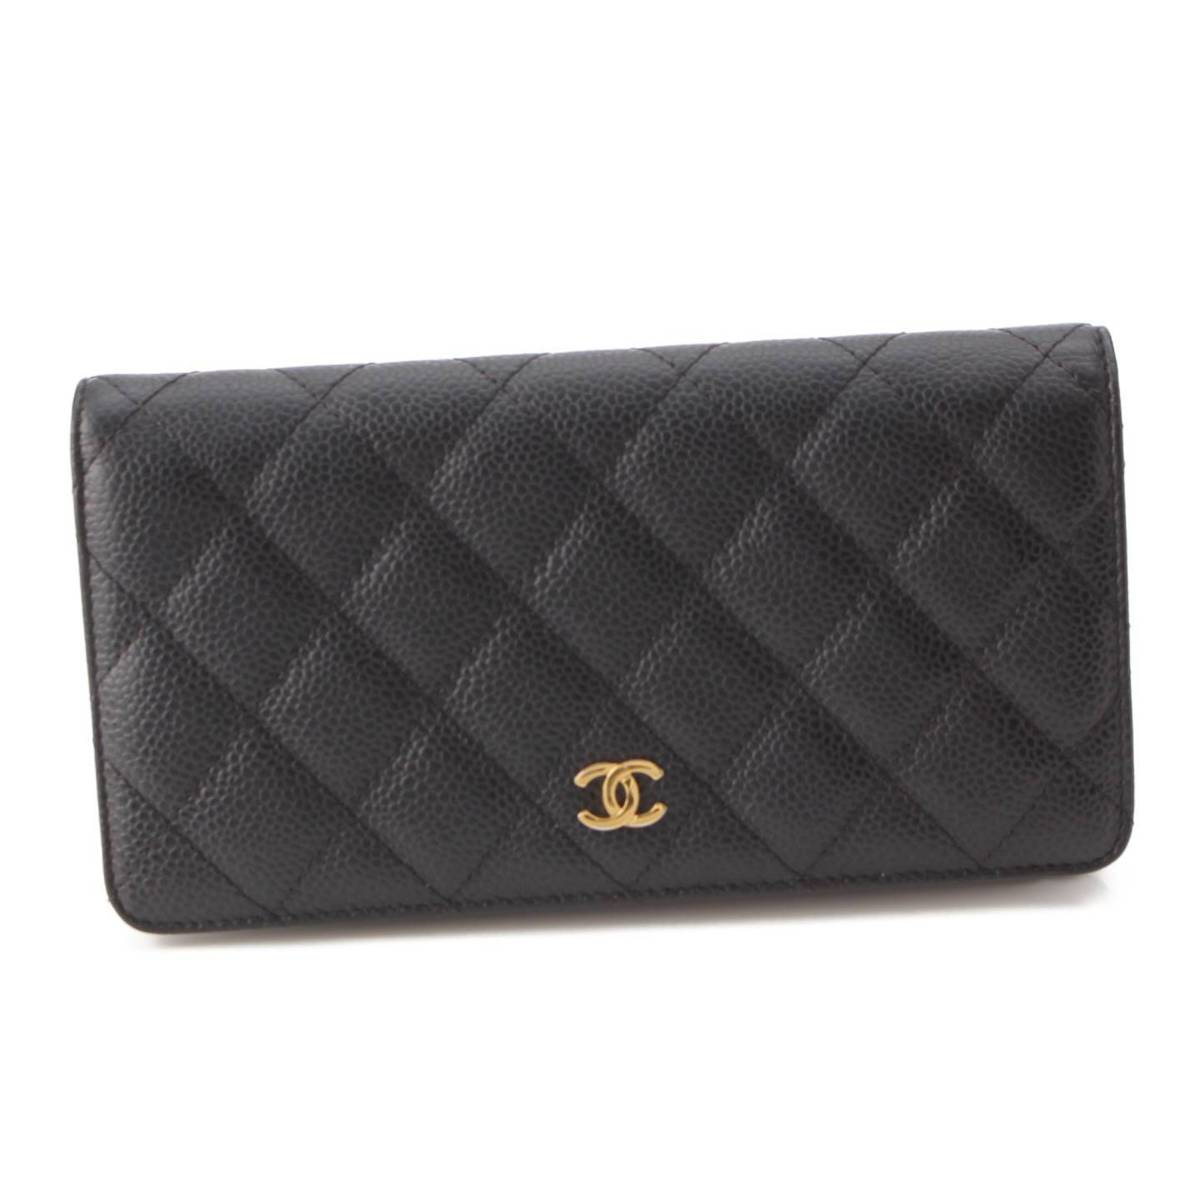 シャネル Chanel 11番 マトラッセ ココマーク ラムスキン 2つ折り財布 ウォレット ブラック 中古 通販 retro レトロ